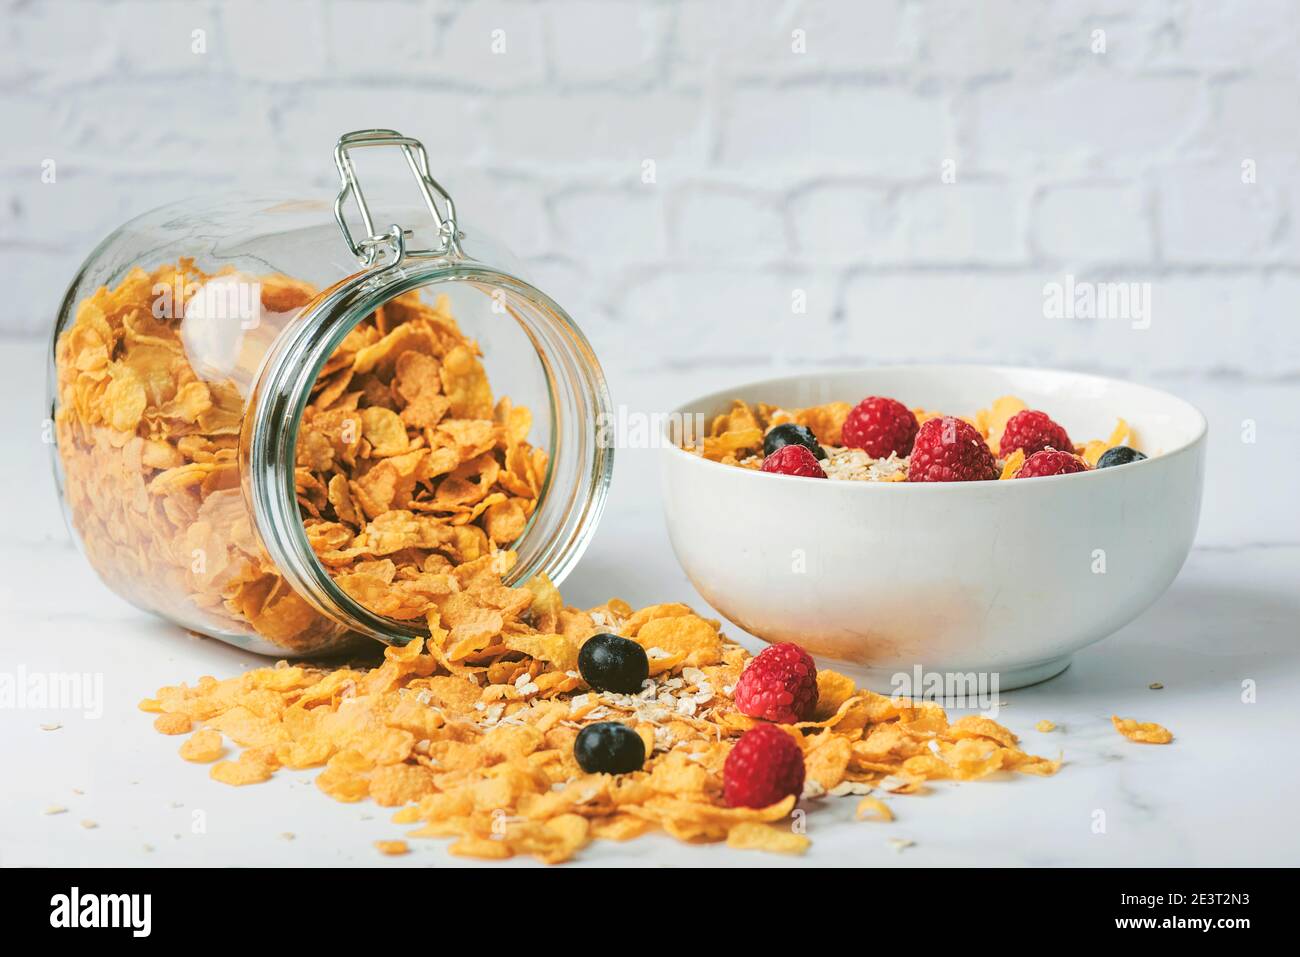 Gesundes Frühstück.Glas mit Getreide neben einer Schüssel Müsli, Cerealien, Himbeeren und Heidelbeeren auf Marmortisch Stockfoto